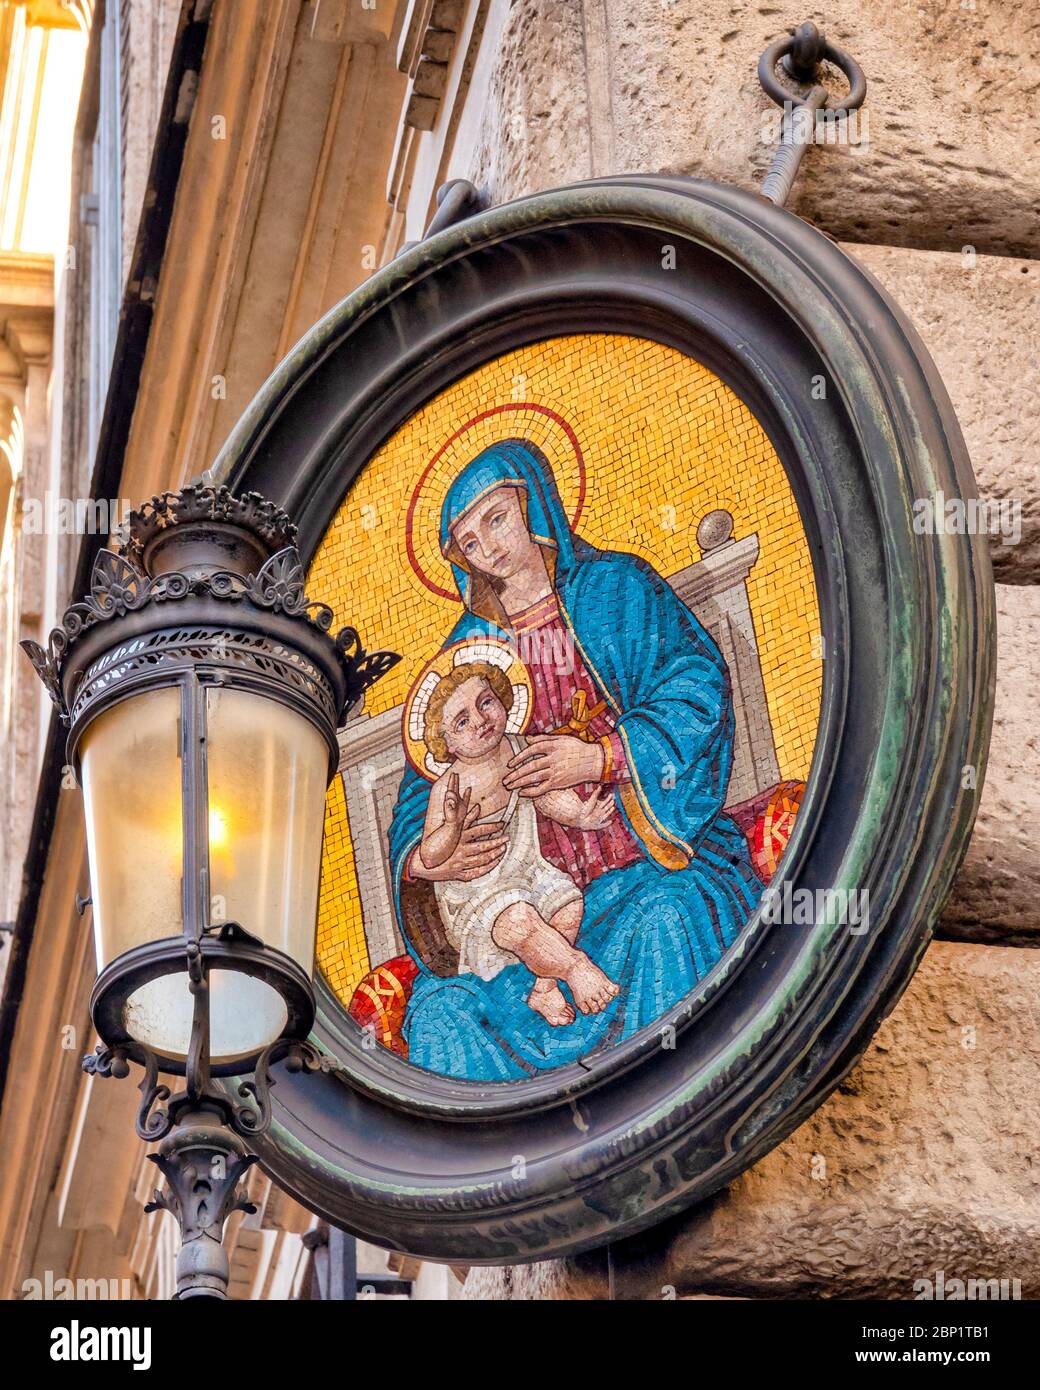 Virgin Mary aedicula on Palazzo Grazioli in Via del Plebiscito, Rome, Italy Stock Photo